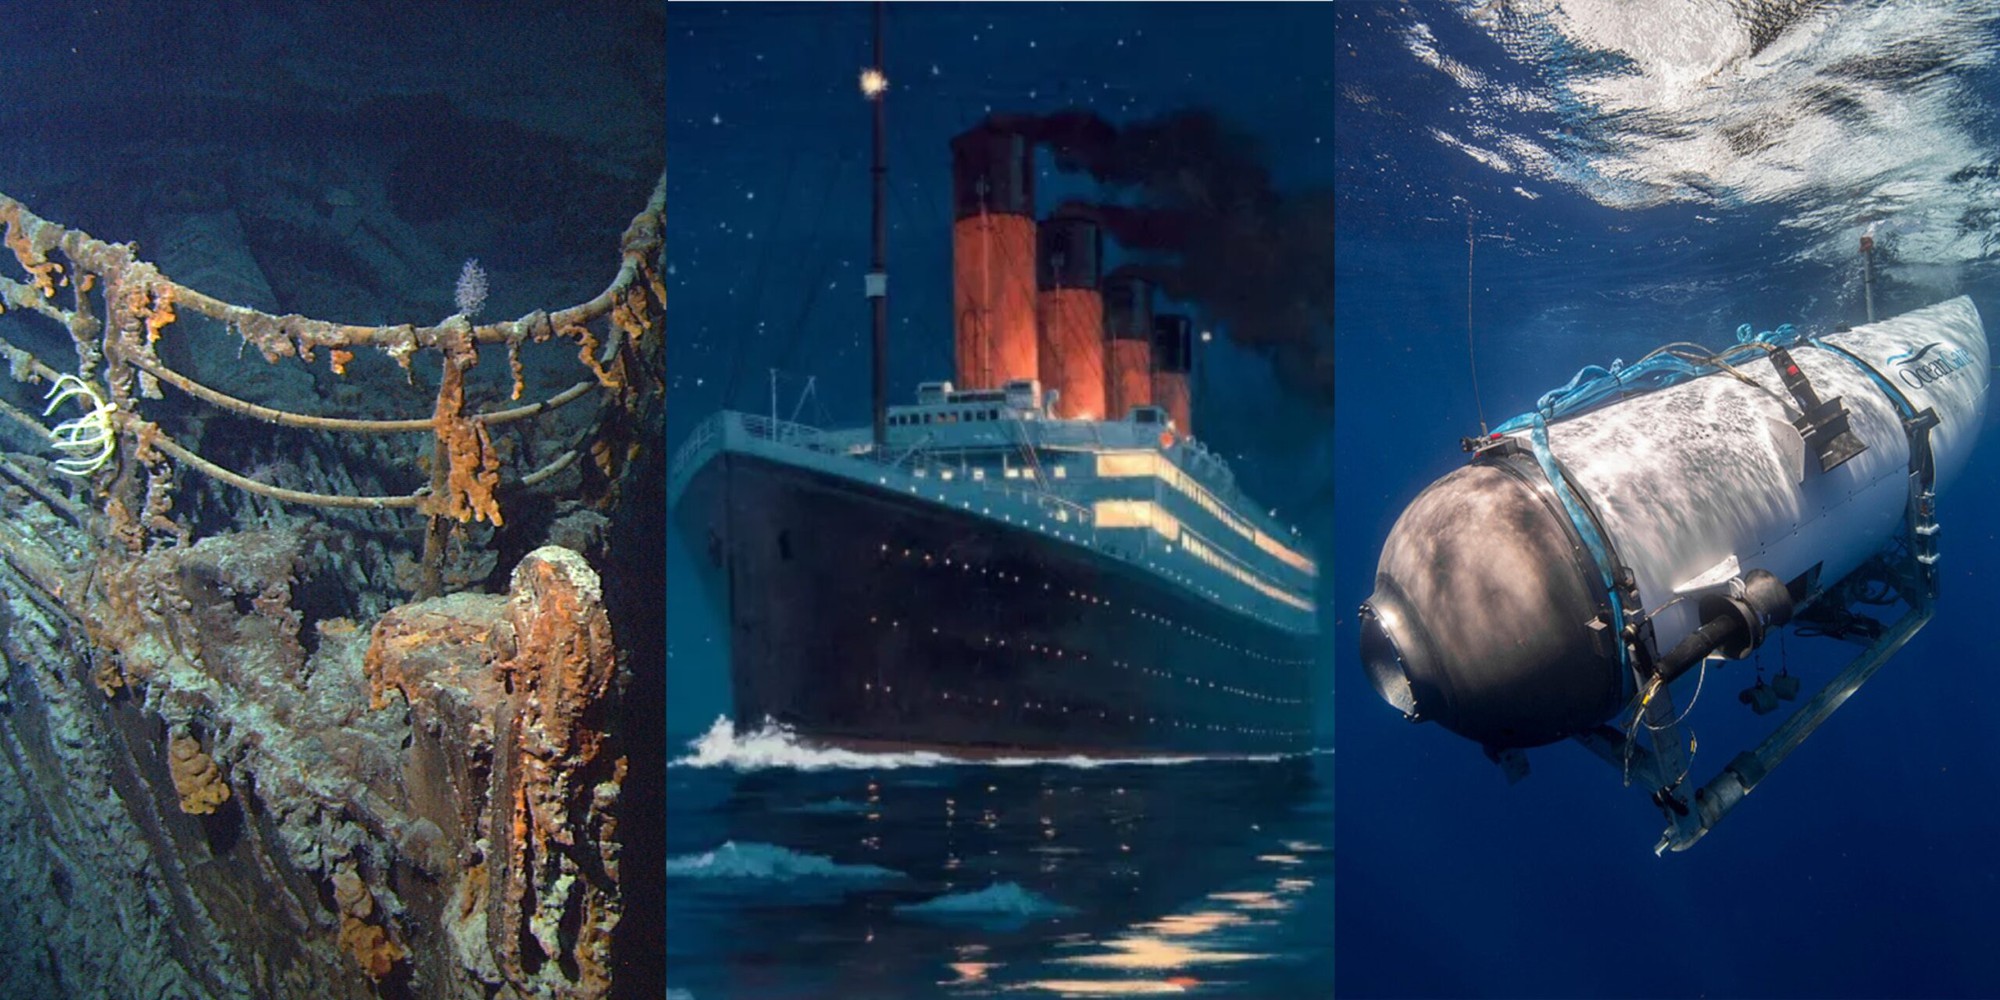 Cú đâm choáng váng xảy ra với tàu lặn thám hiểm Titanic: Thoát chết trong gang tấc - Ảnh 1.